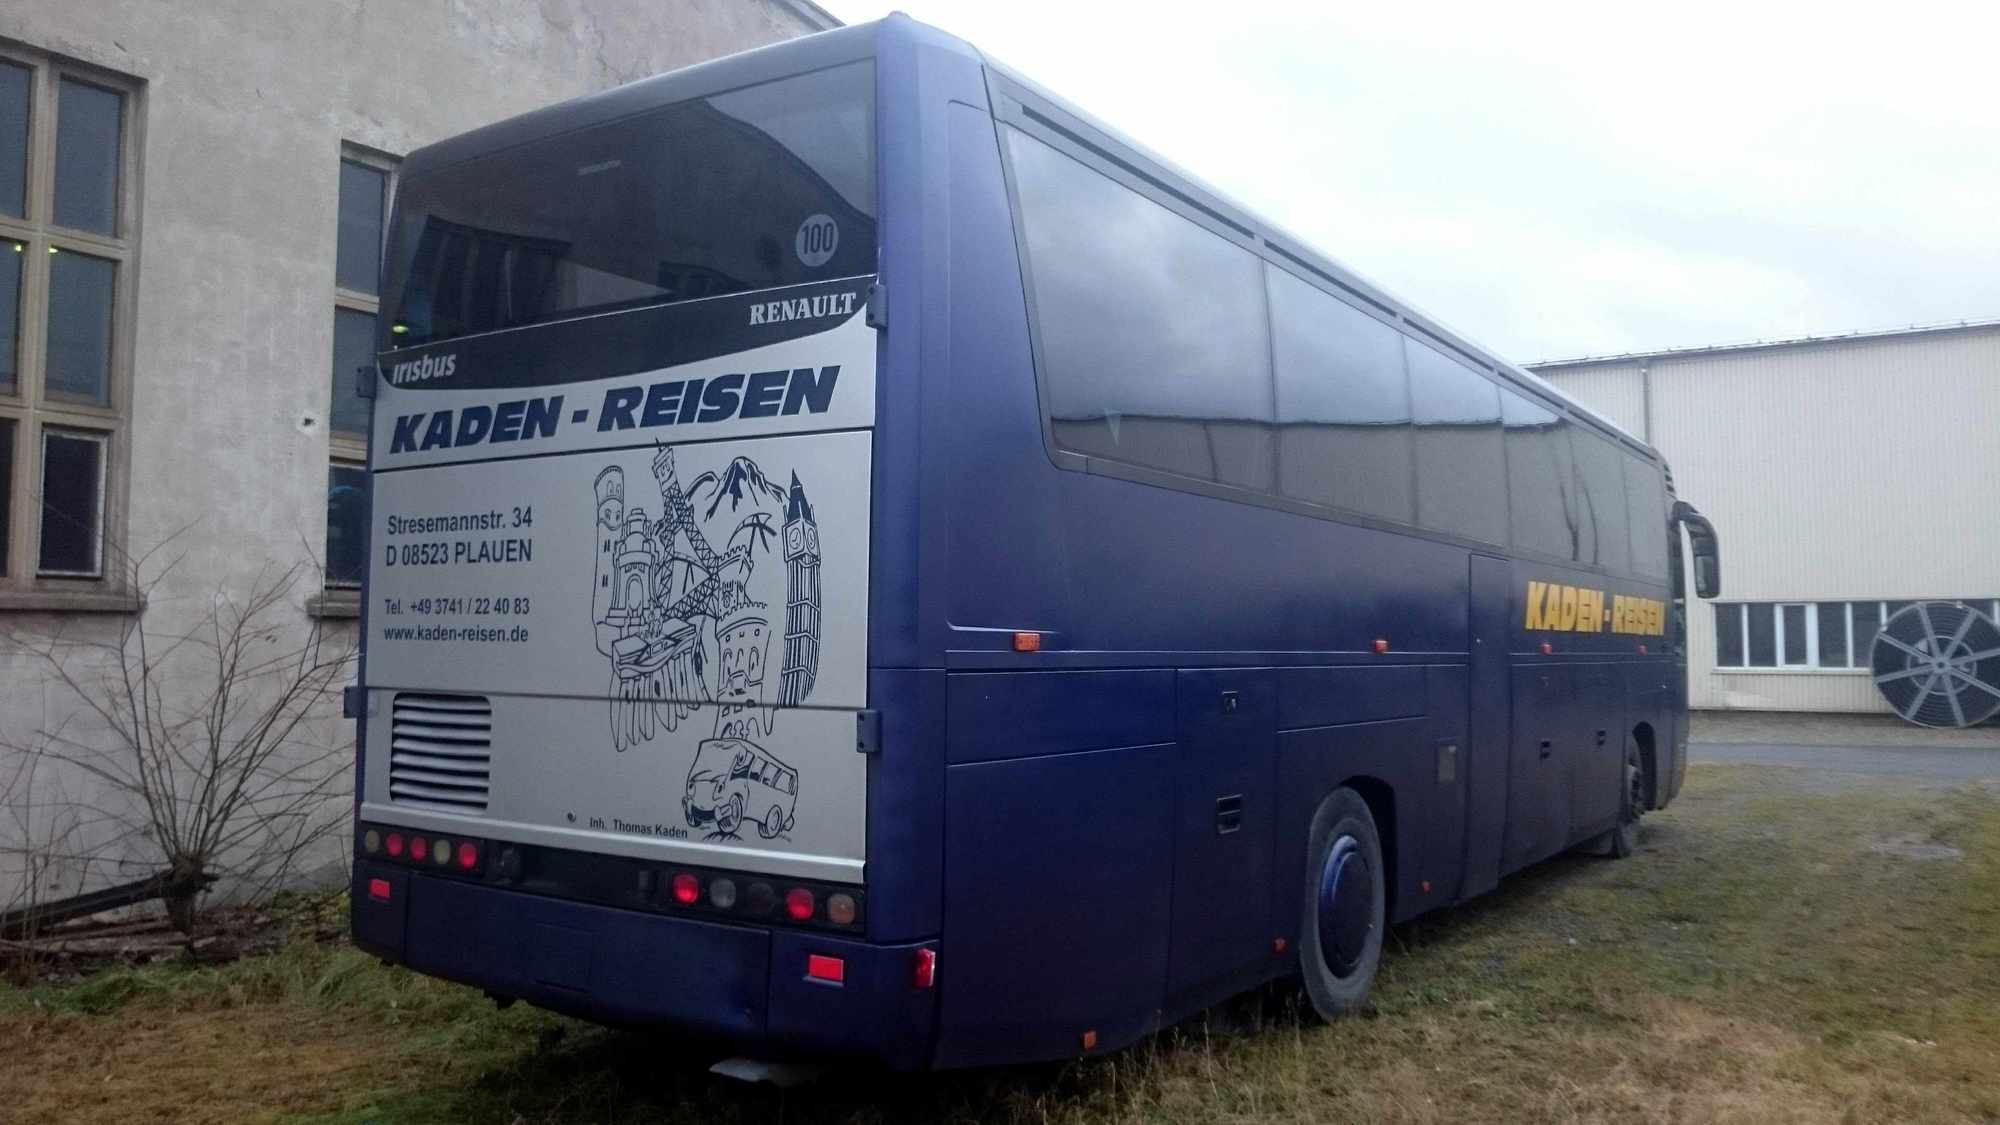 Kaden-Reisen undefined: picture 2